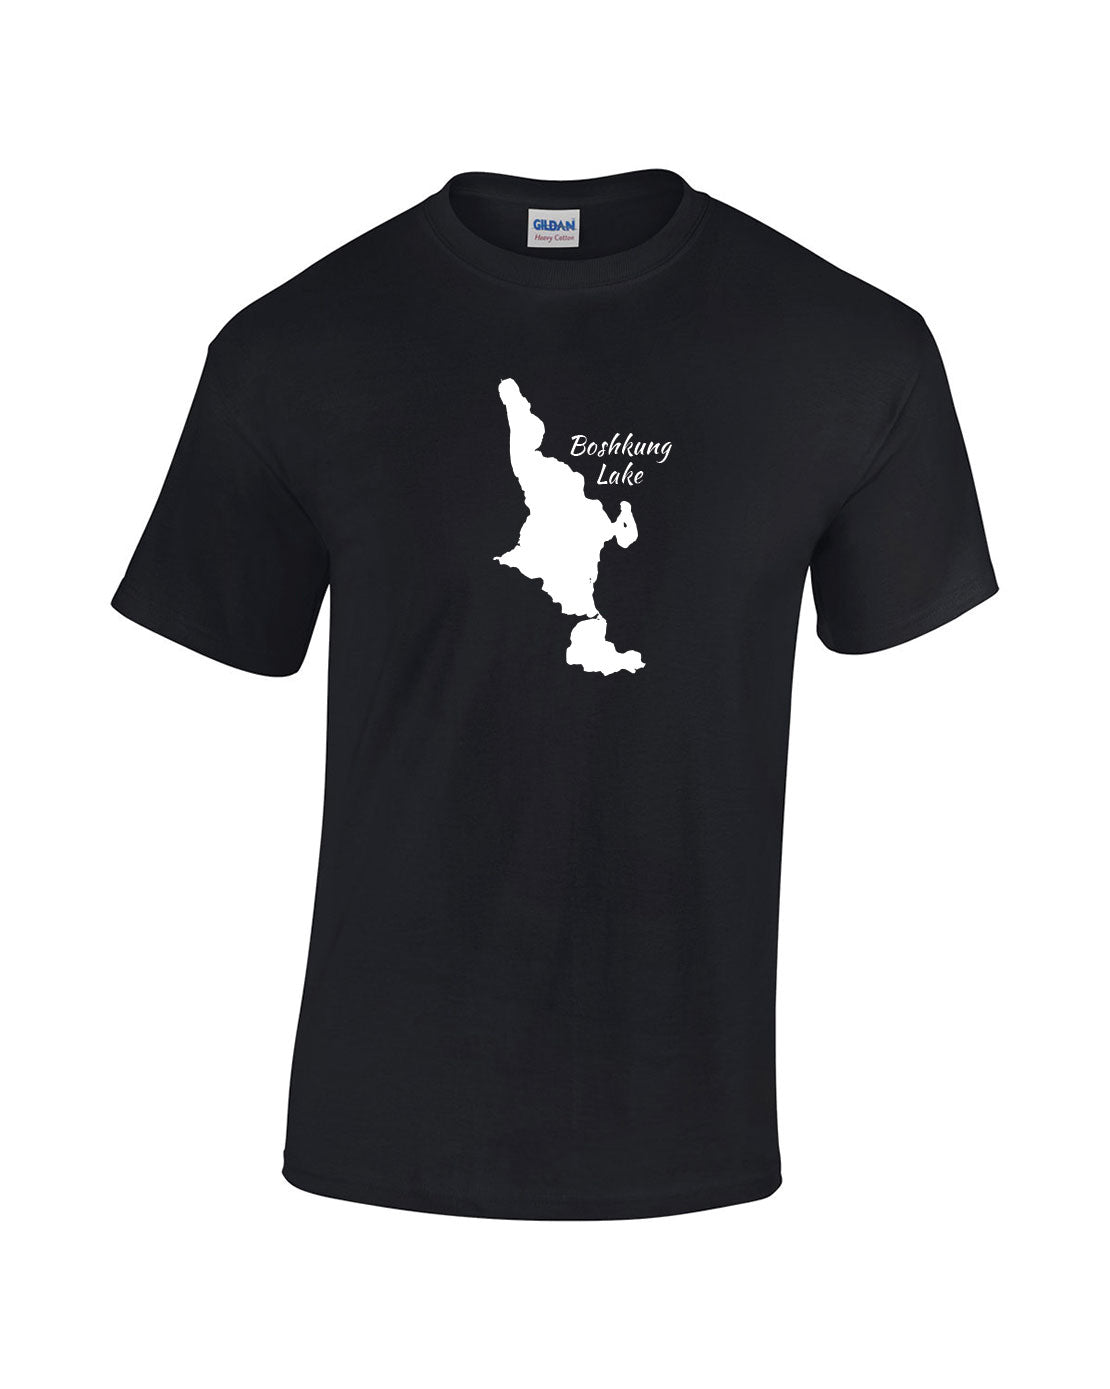 Boshkung Lake T-Shirt